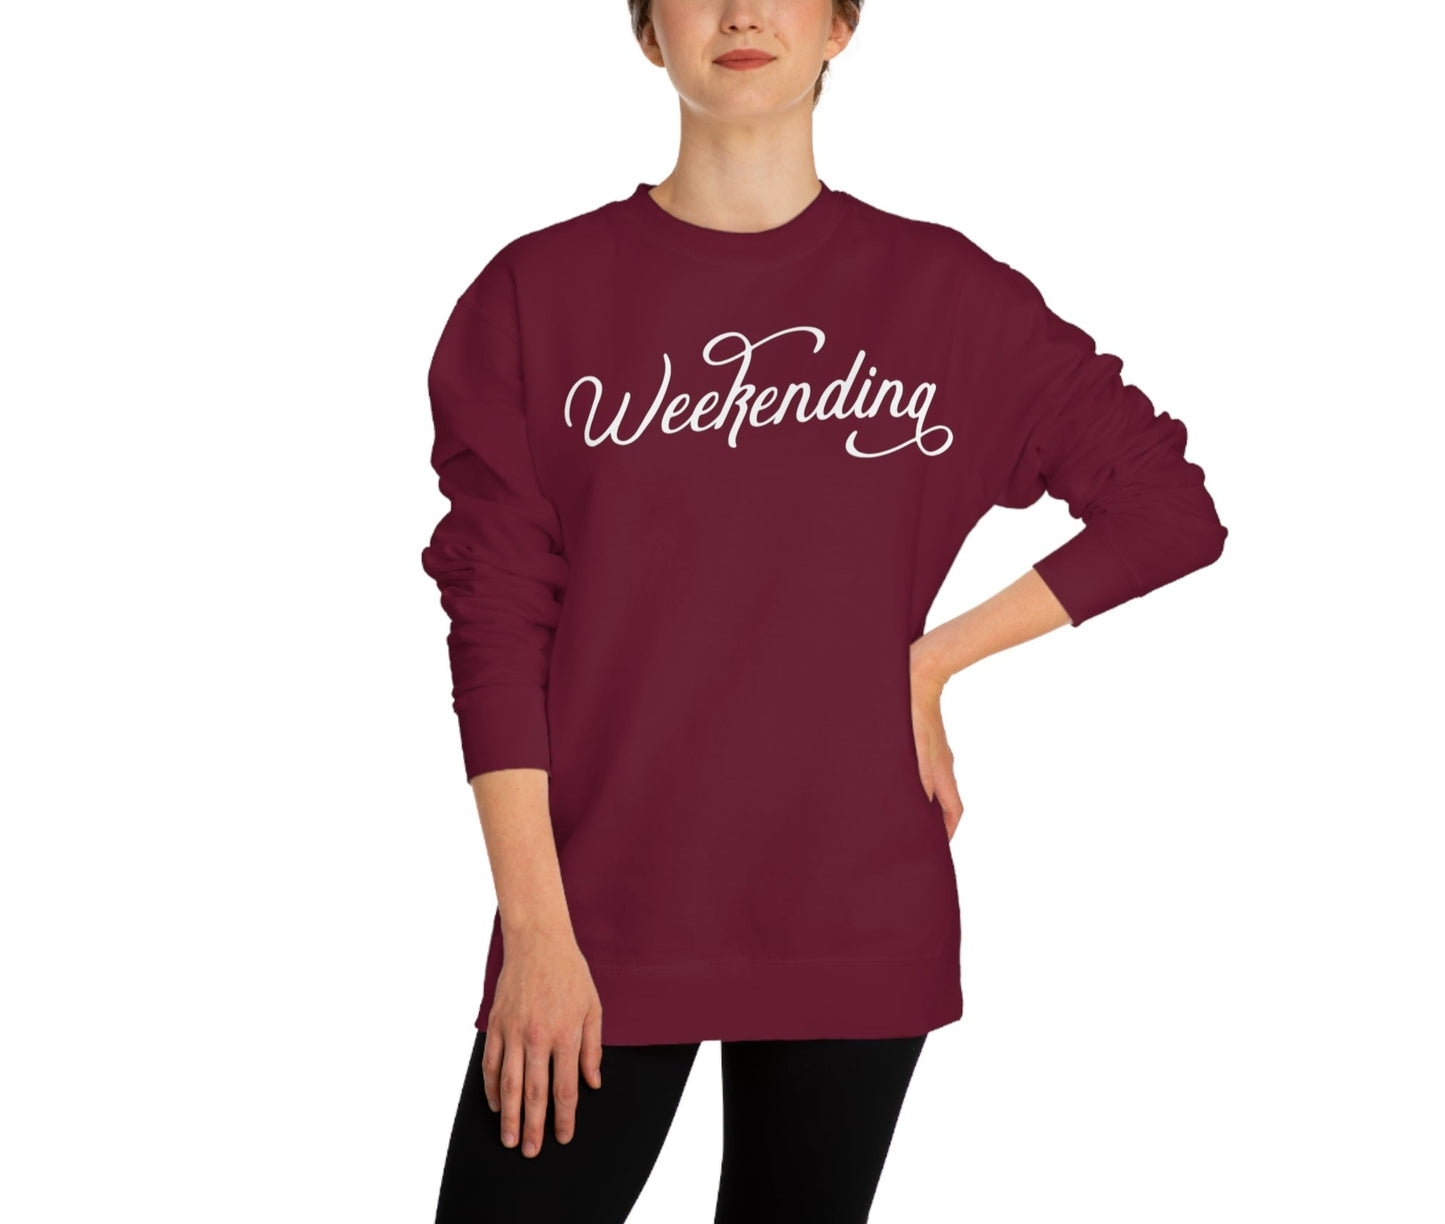 Weekending Sweatshirt